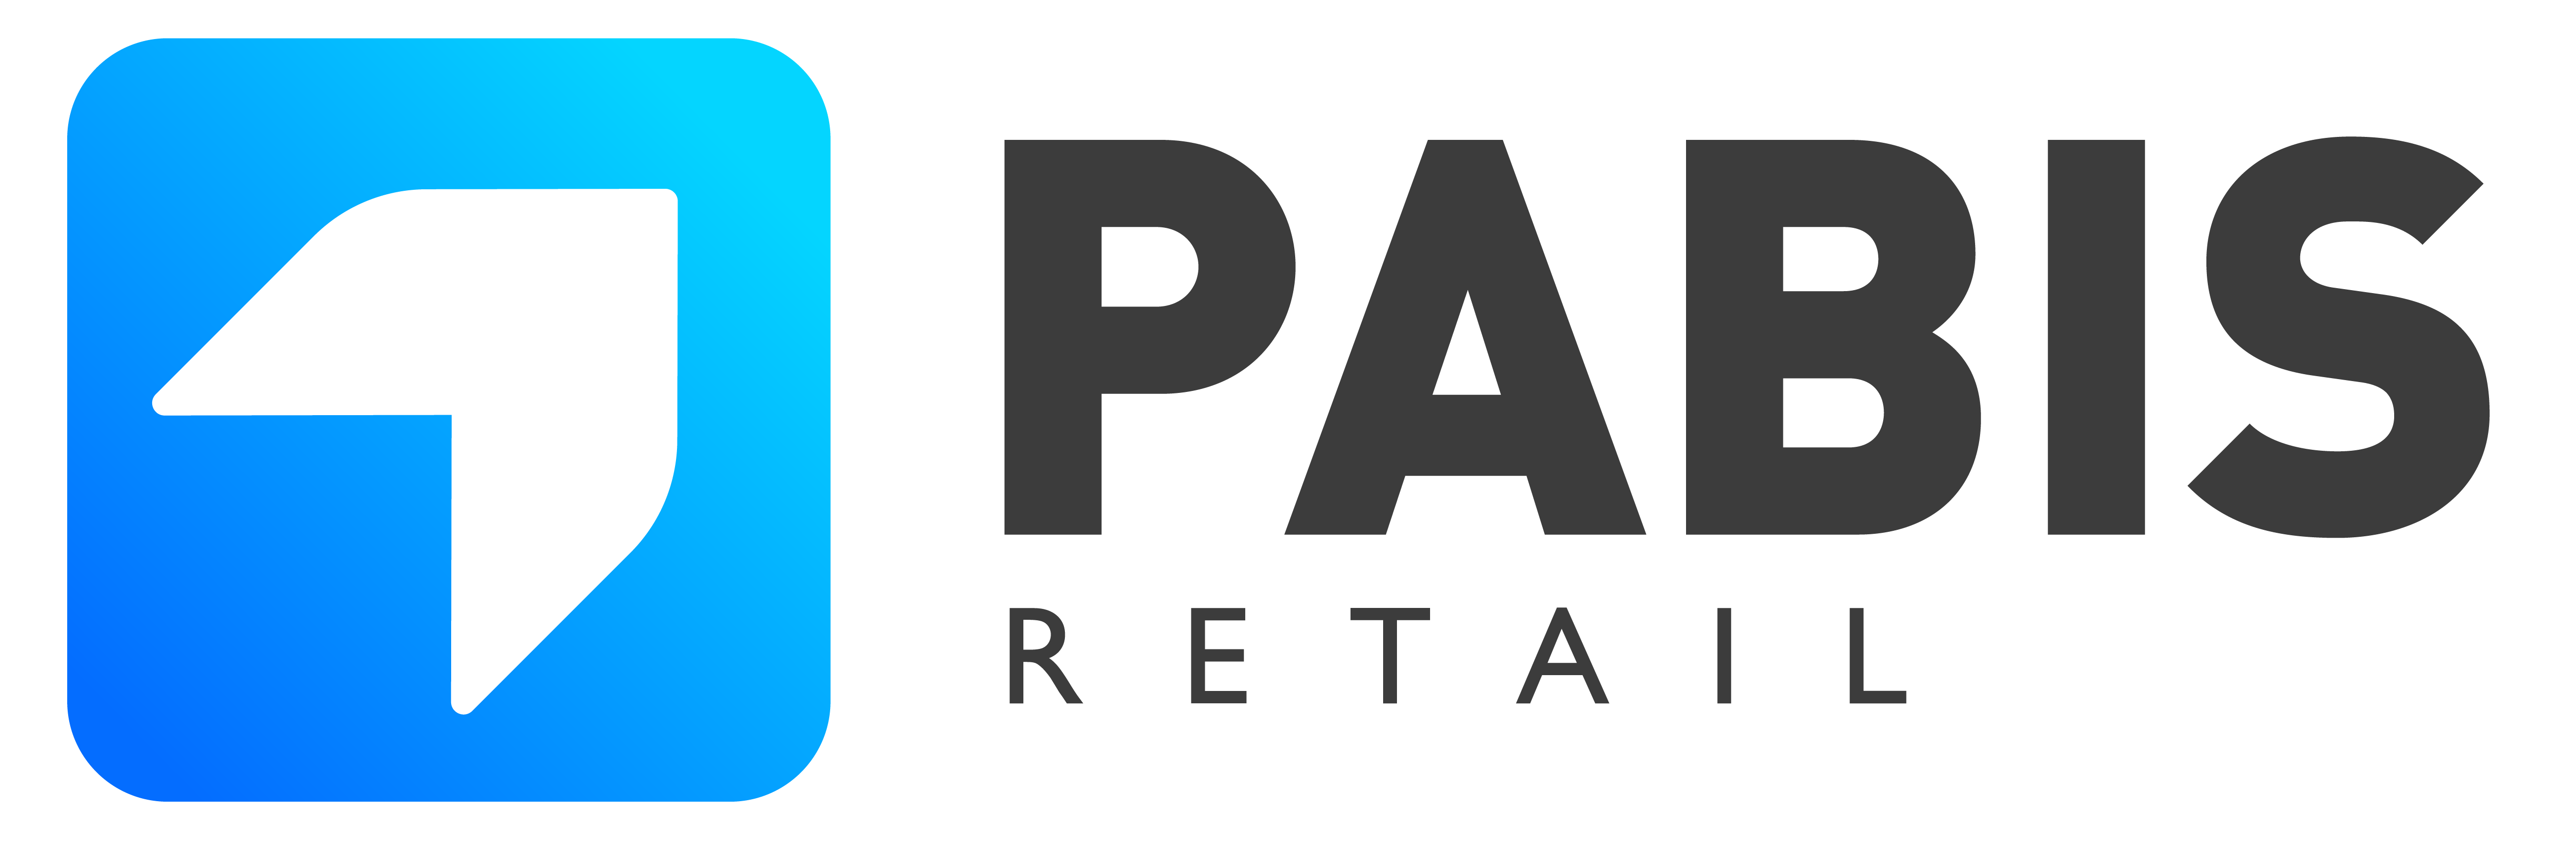 Pabis Retail